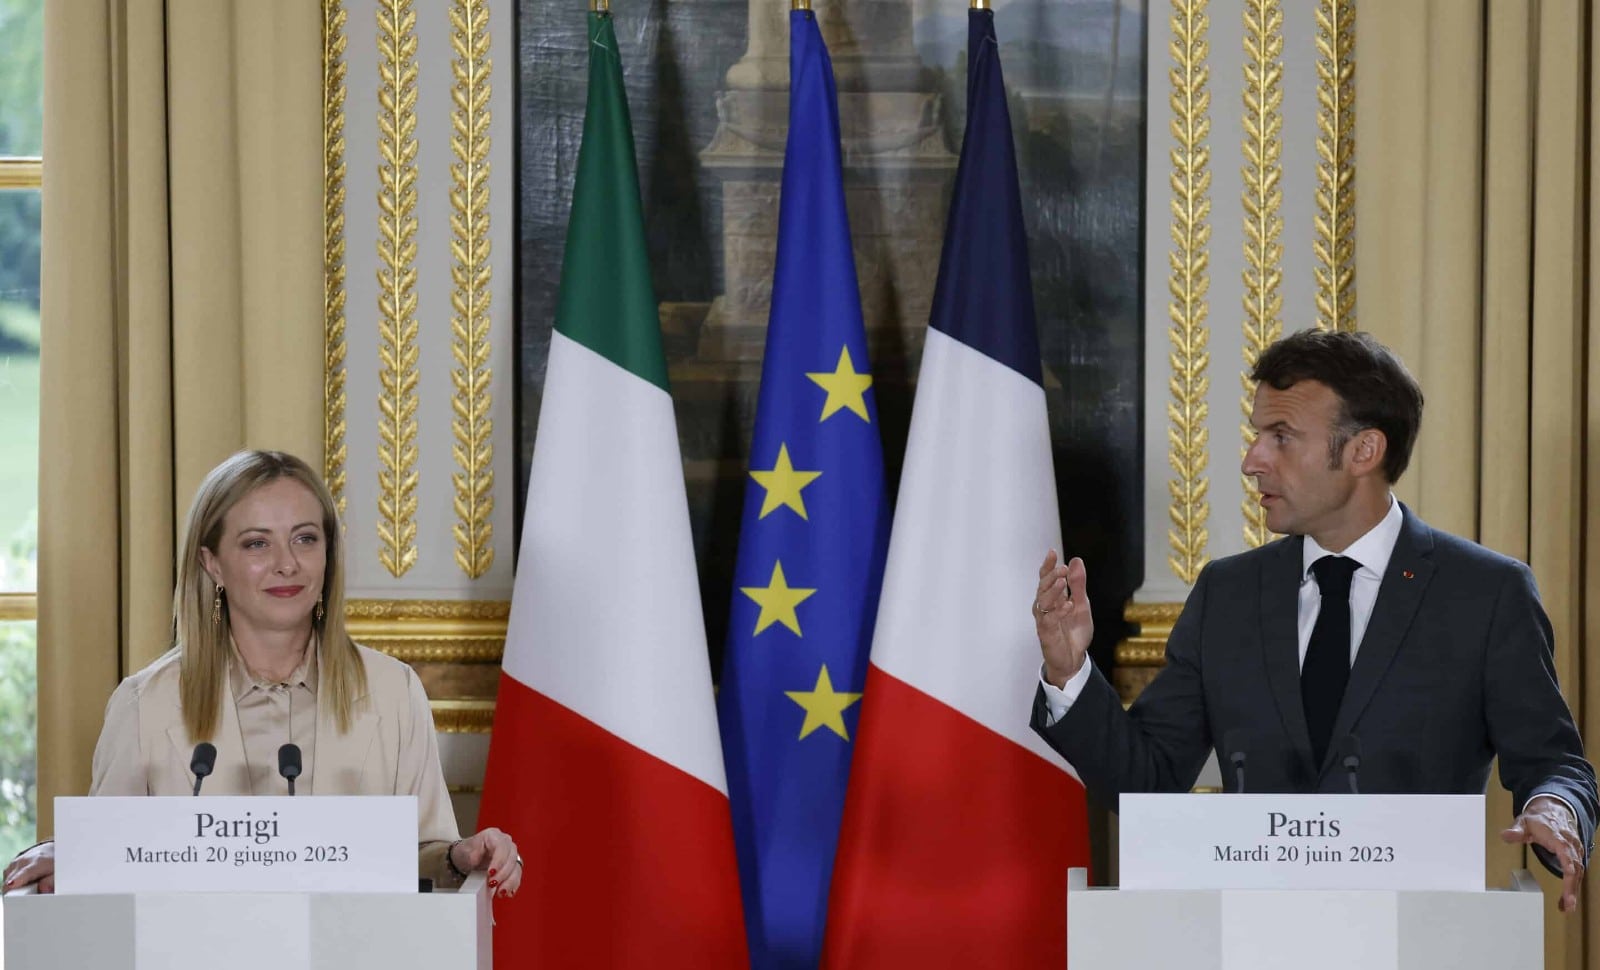 La relation entre la France et l’Italie reste dense et étroite